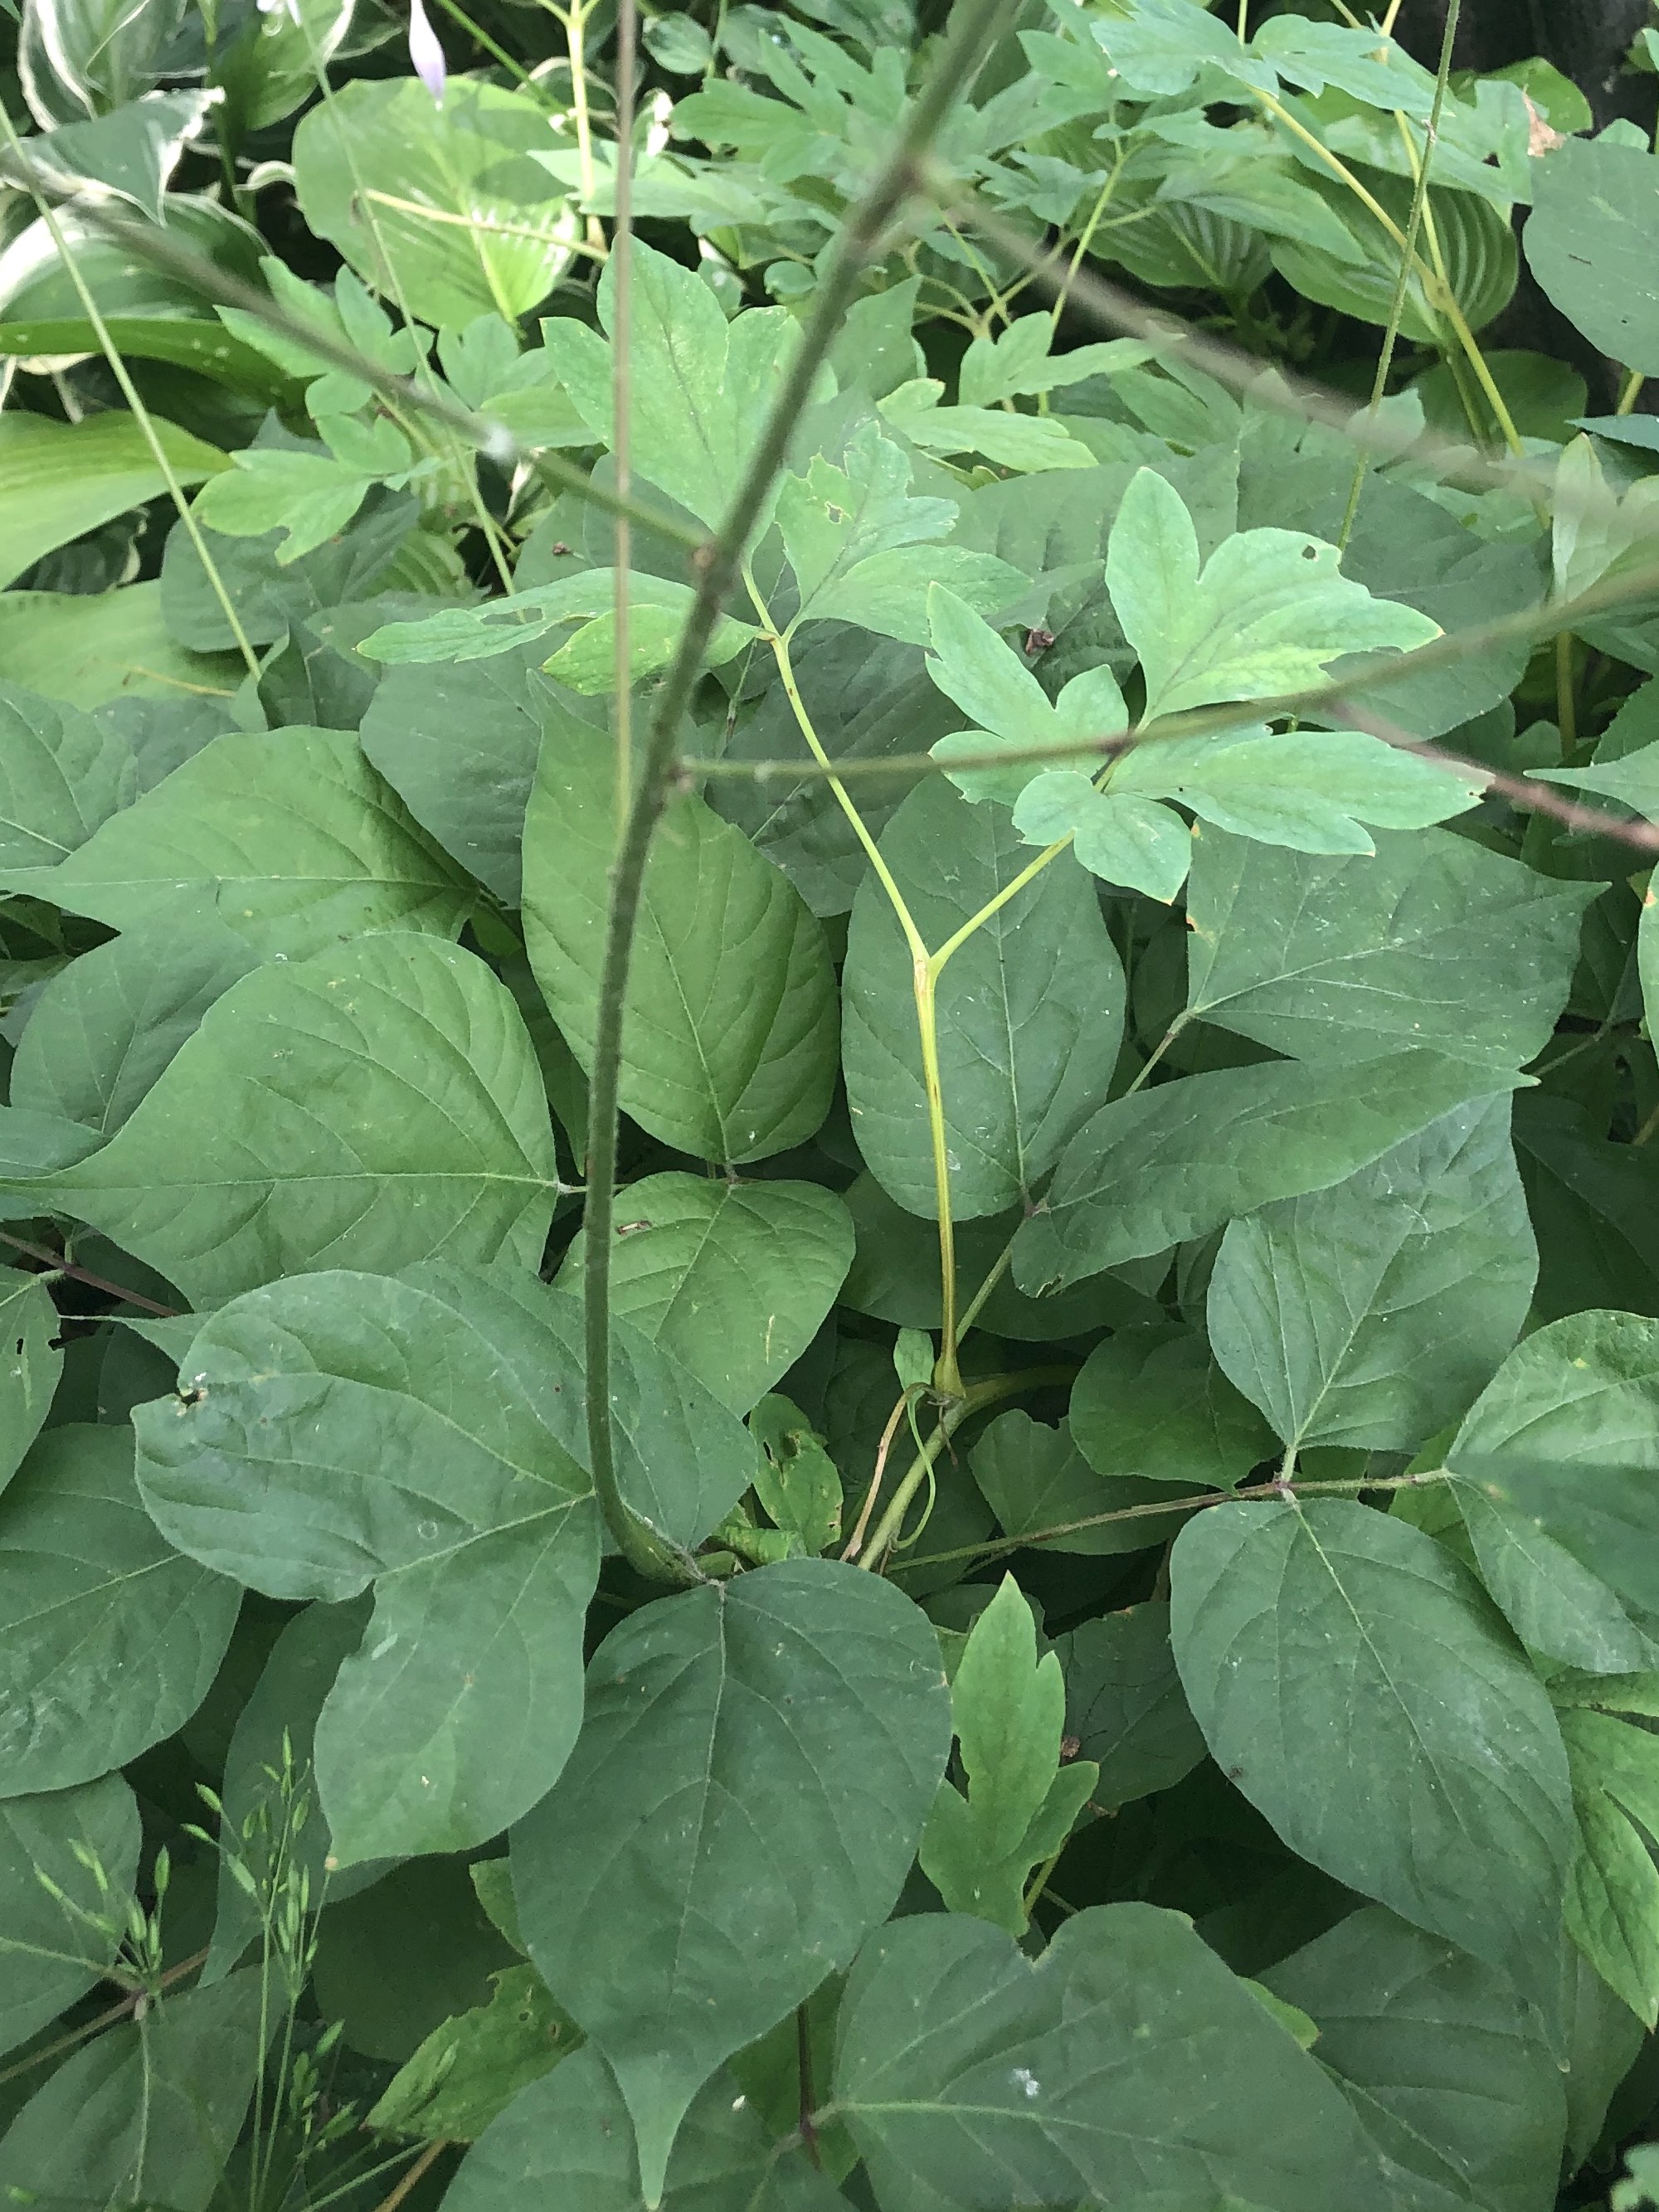 Pointed-leaf Tick-trefoil in Nakoma Park on July 14, 2020.